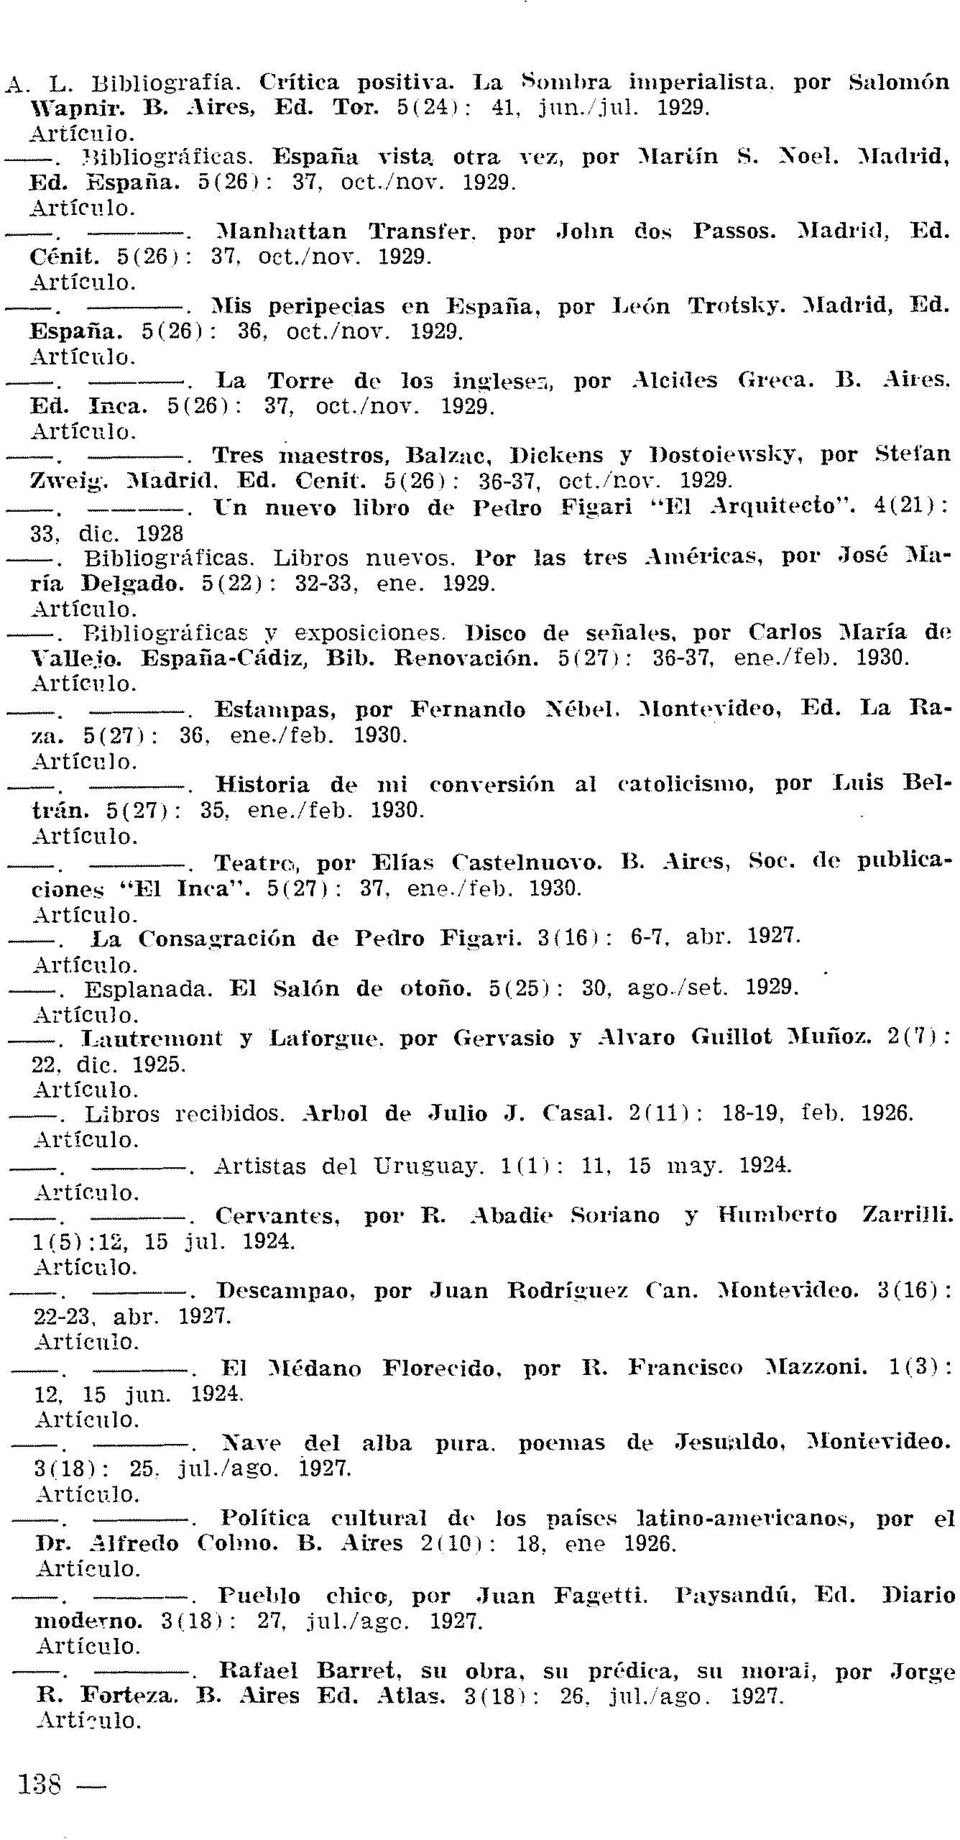 por ],eón Trotsl,y. )Iadl'id, I~d. España. 5(26): 36, oct.inoy. 1929. Artícnlo. ----o La Torre de los inglesec., por.-\lcilles Greca. B.,-lh'es. Ed. Inca. 5 (26): 37, ocunoy. 1929. ----o Tres inaestros, Balzac.